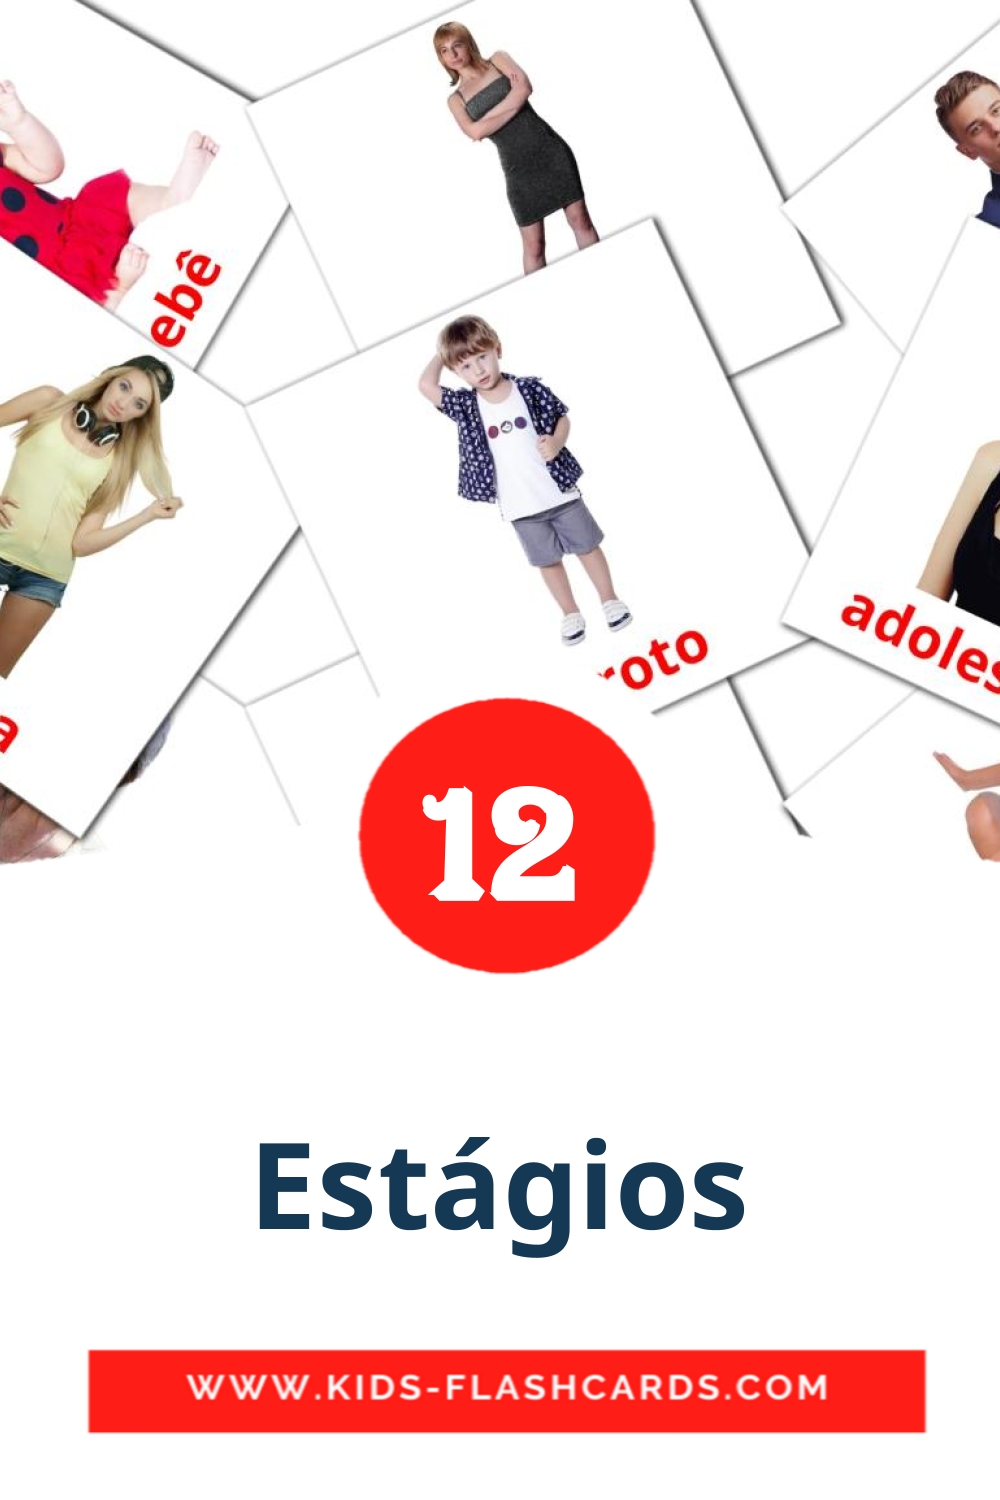 Estágios на португальском для Детского Сада (12 карточек)